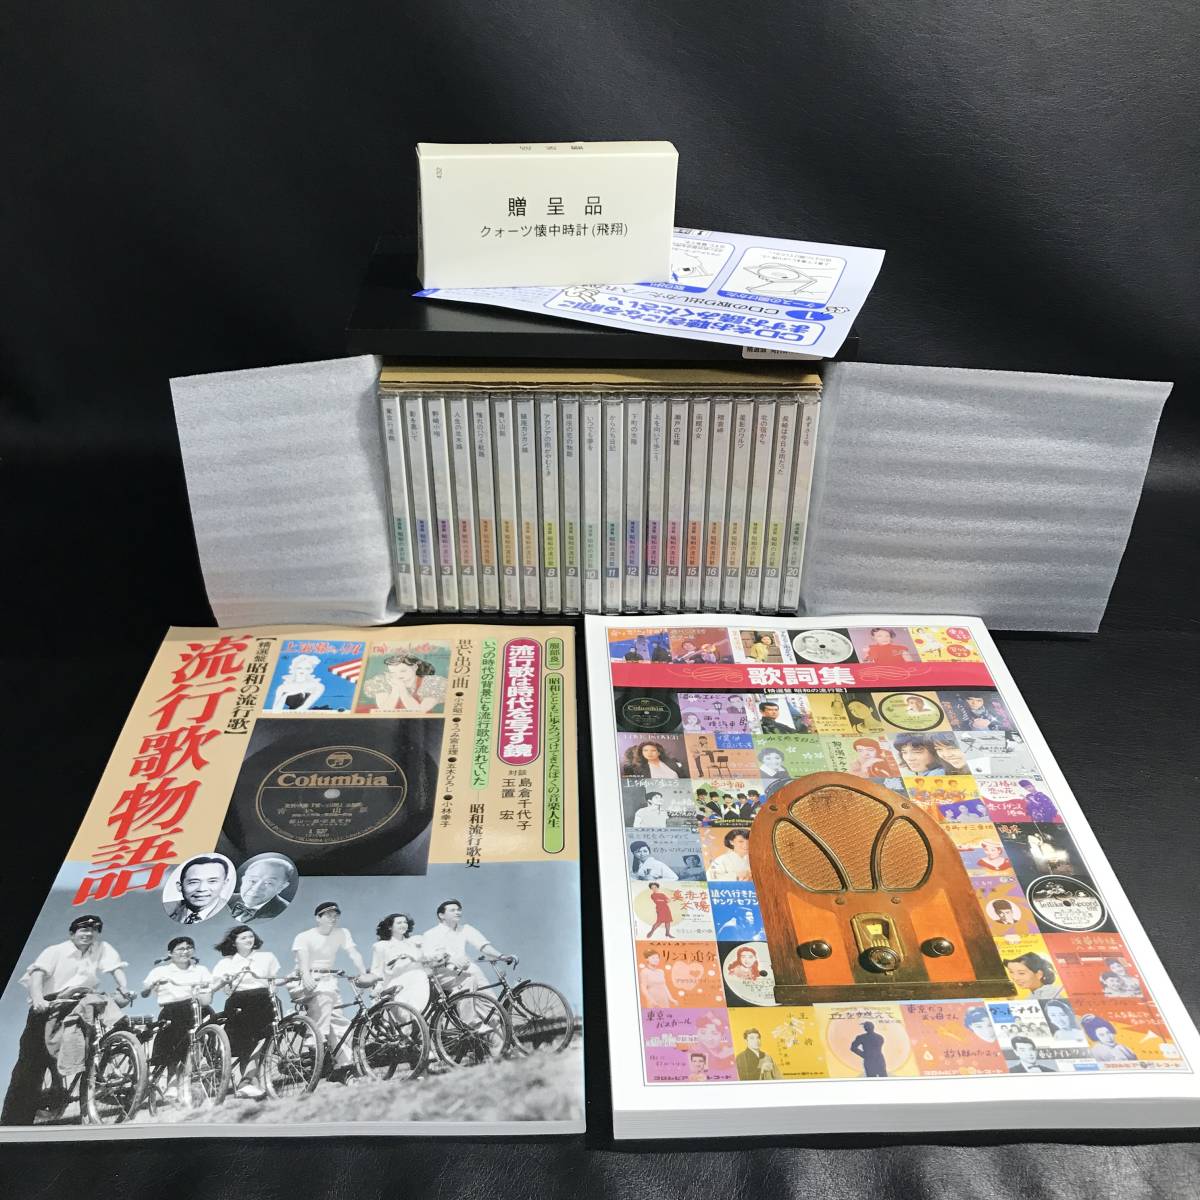 Yahoo!オークション -「昭和の流行歌 cd全20巻」(音楽) の落札相場 